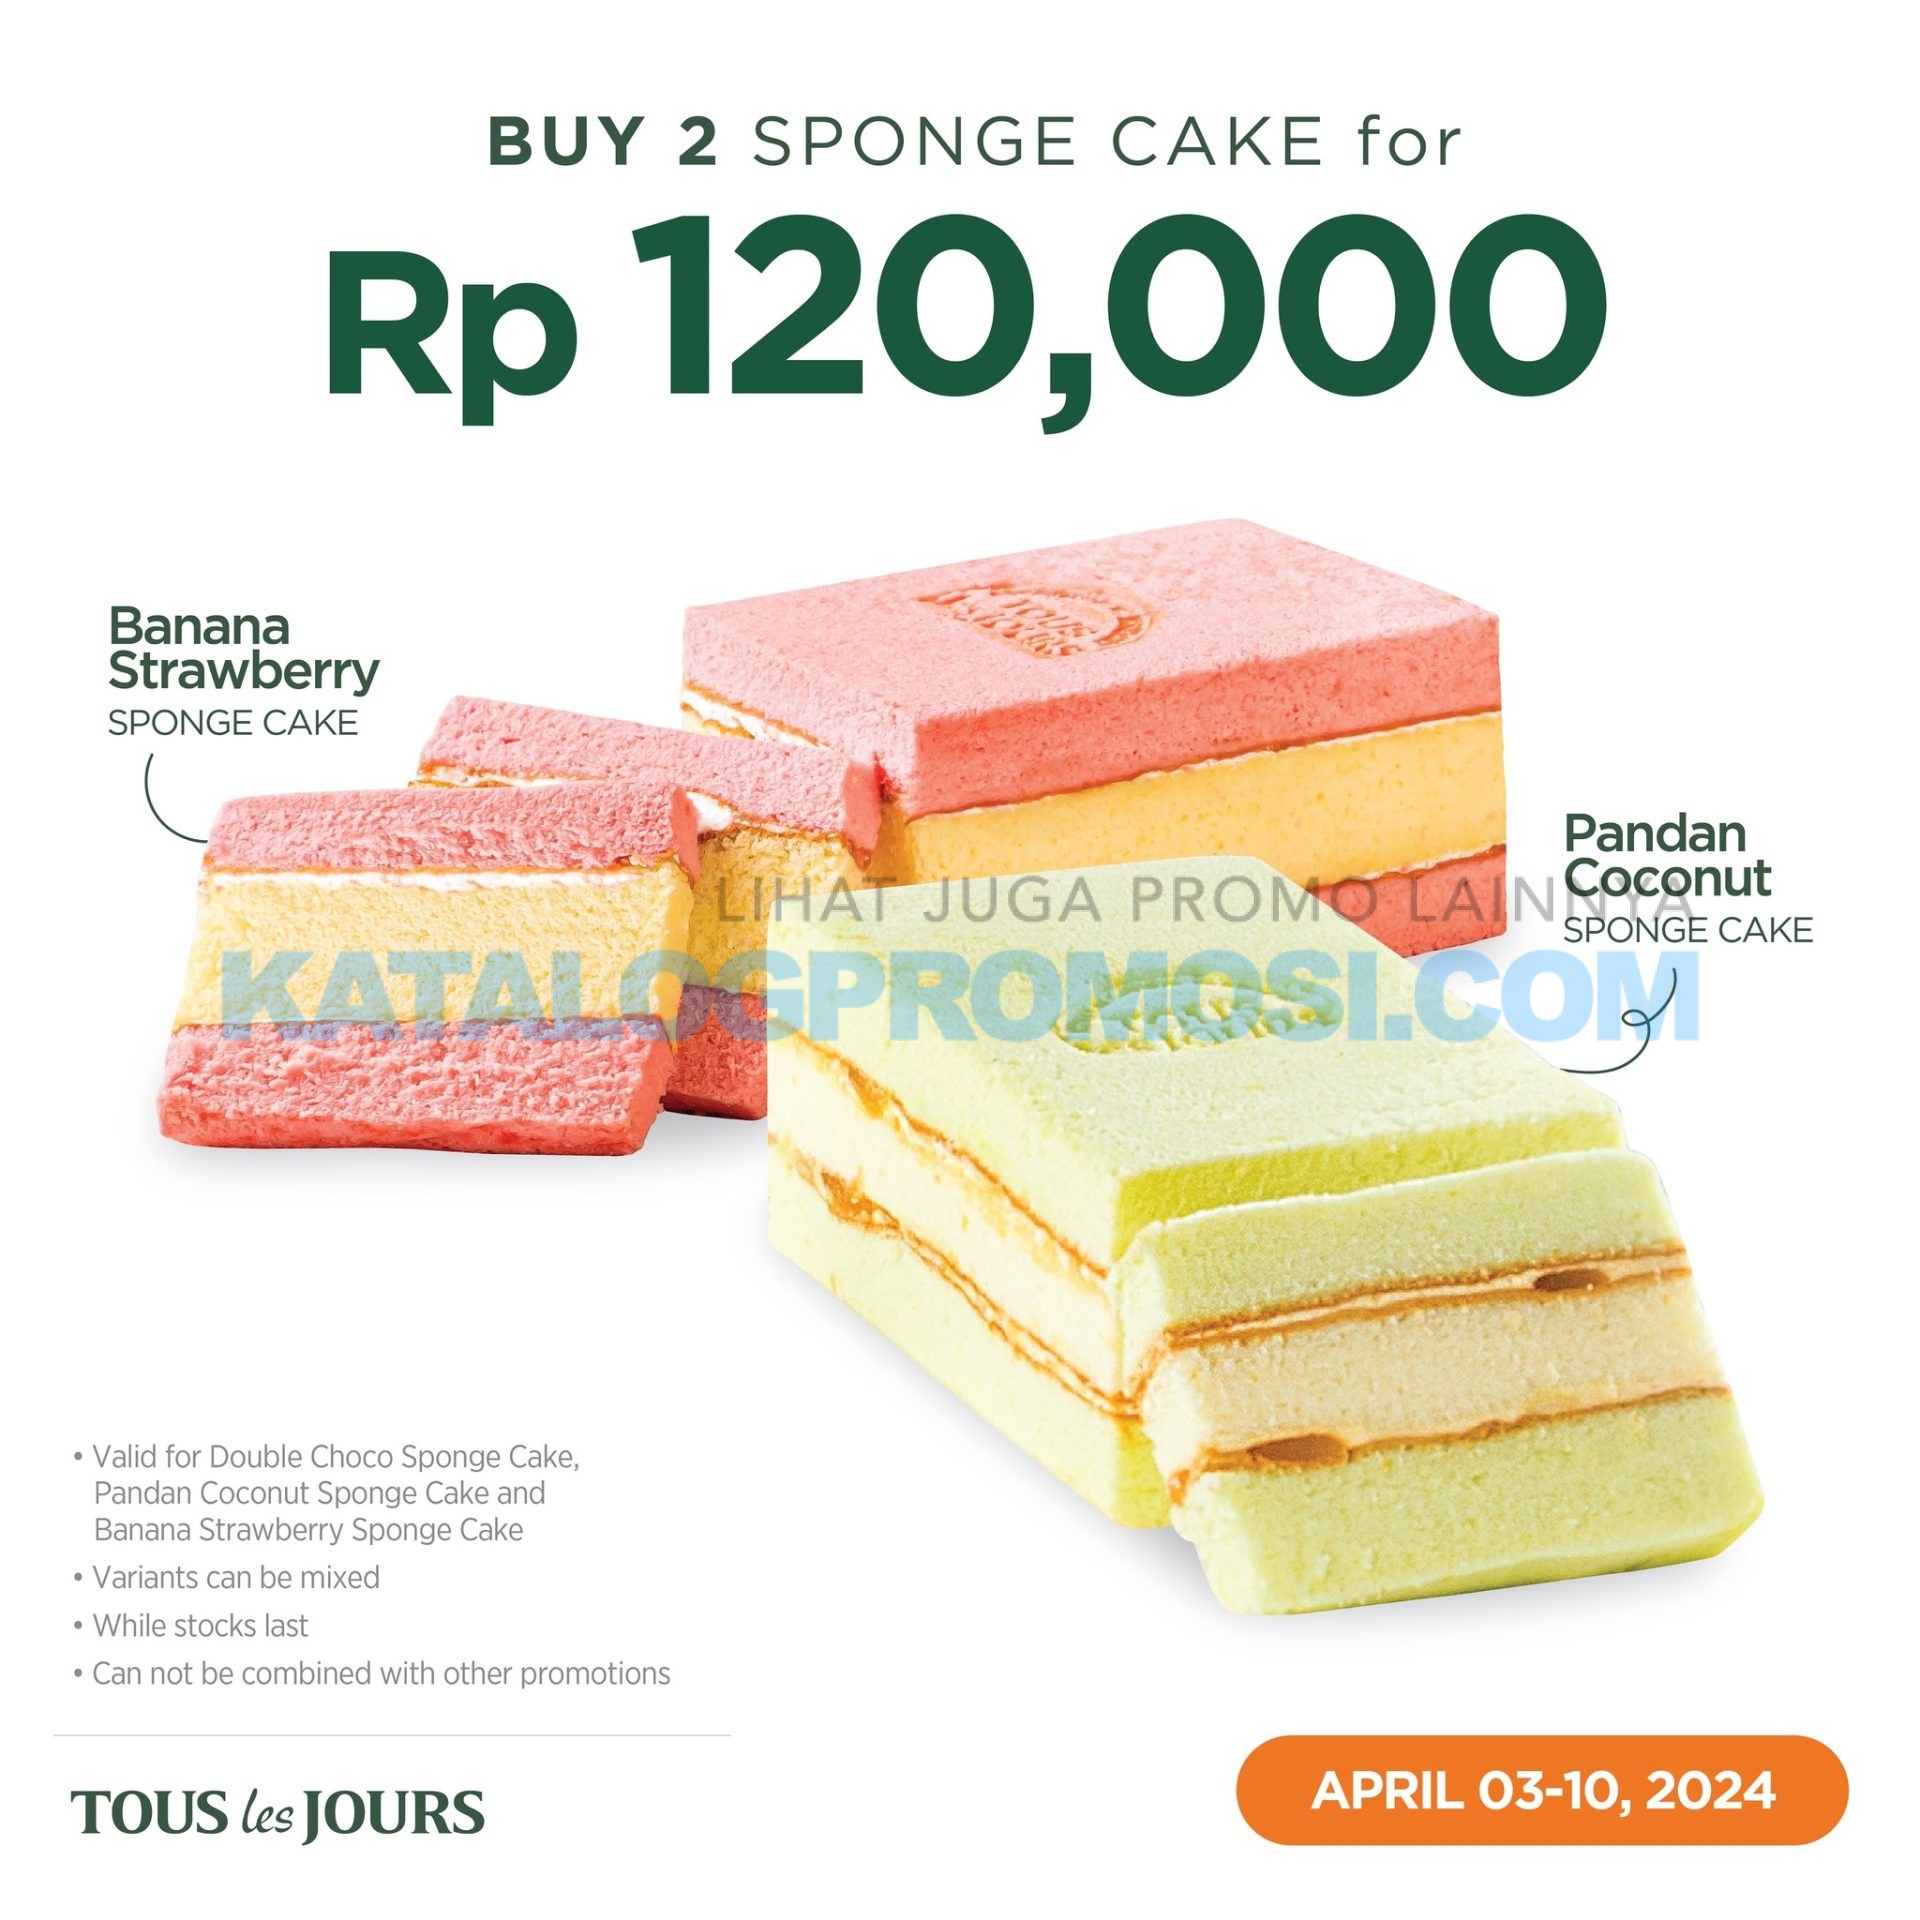 Promo TOUS les JOURS Buy 2 sponge cakes only for Rp 120.000!  berlaku mulai tanggal 03-10 April 2024